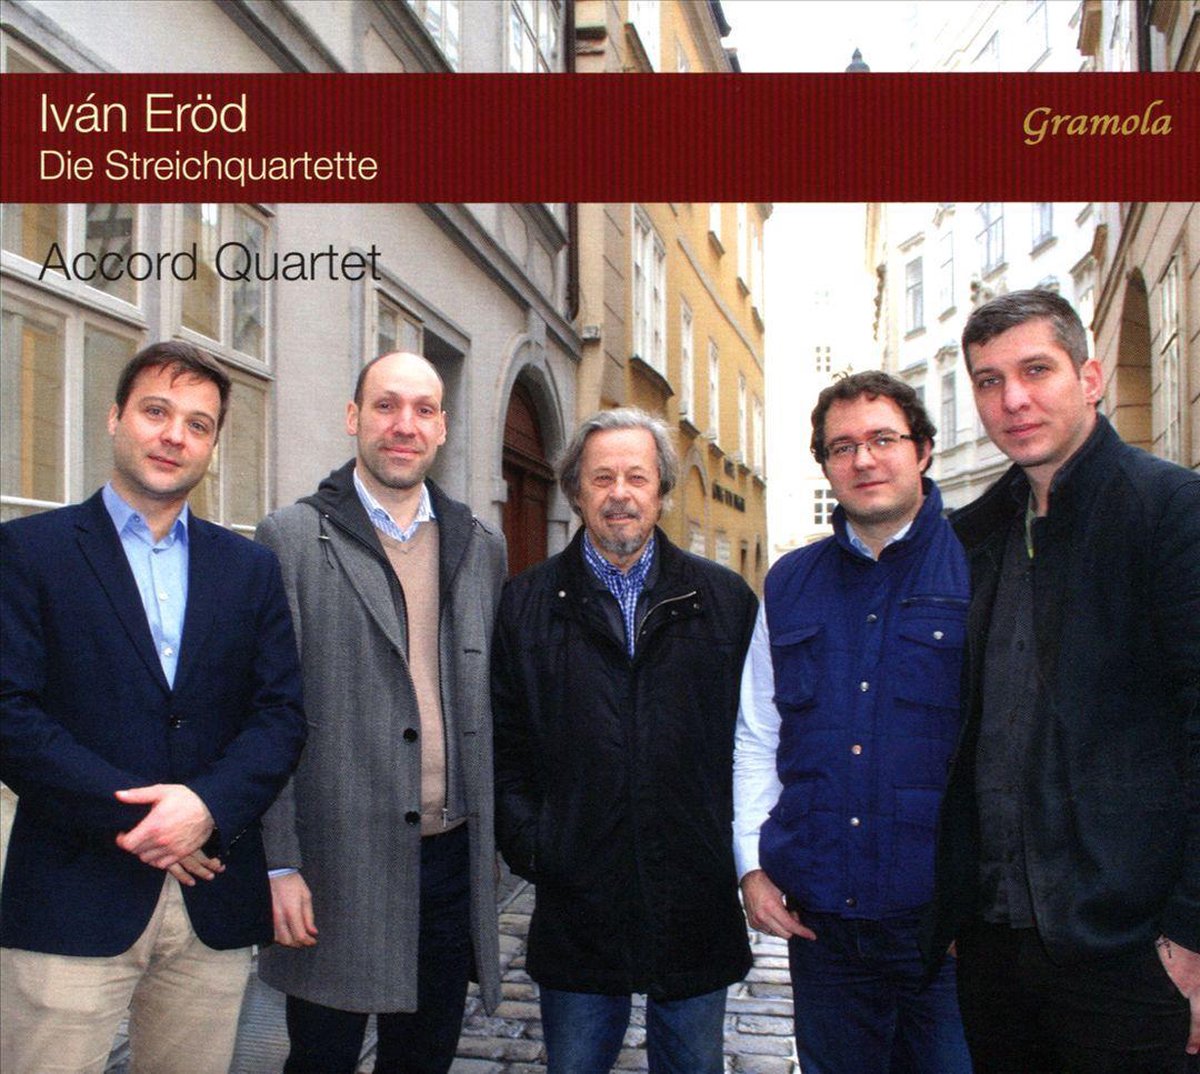 Erod: Die Streichquartette - Accord Quartet